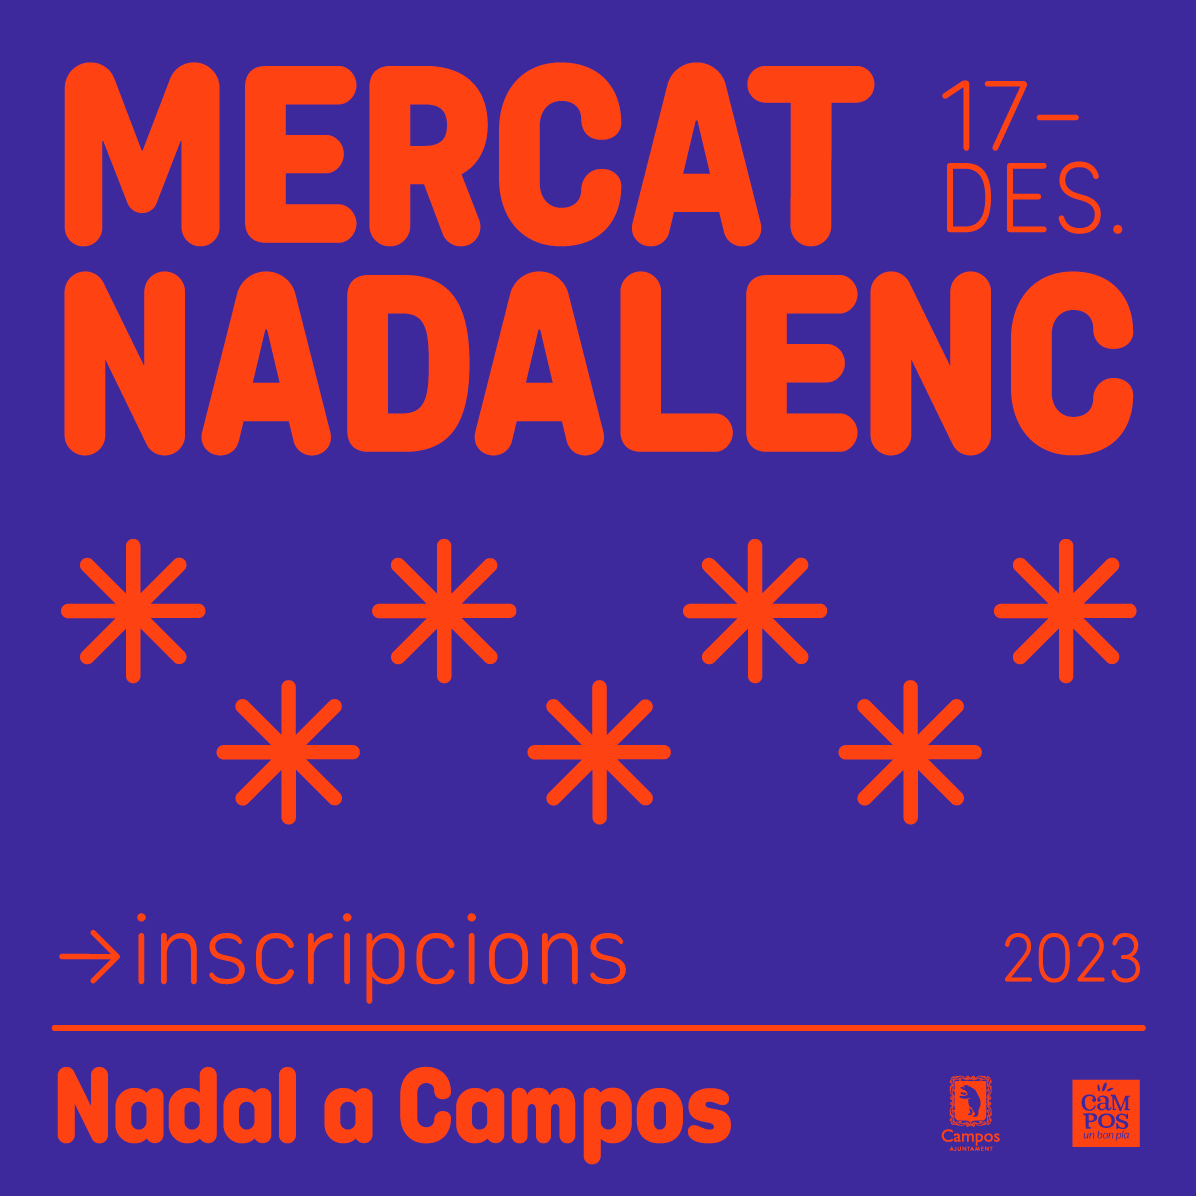 INSCRIPCIONS MERCAT NADAL 2023